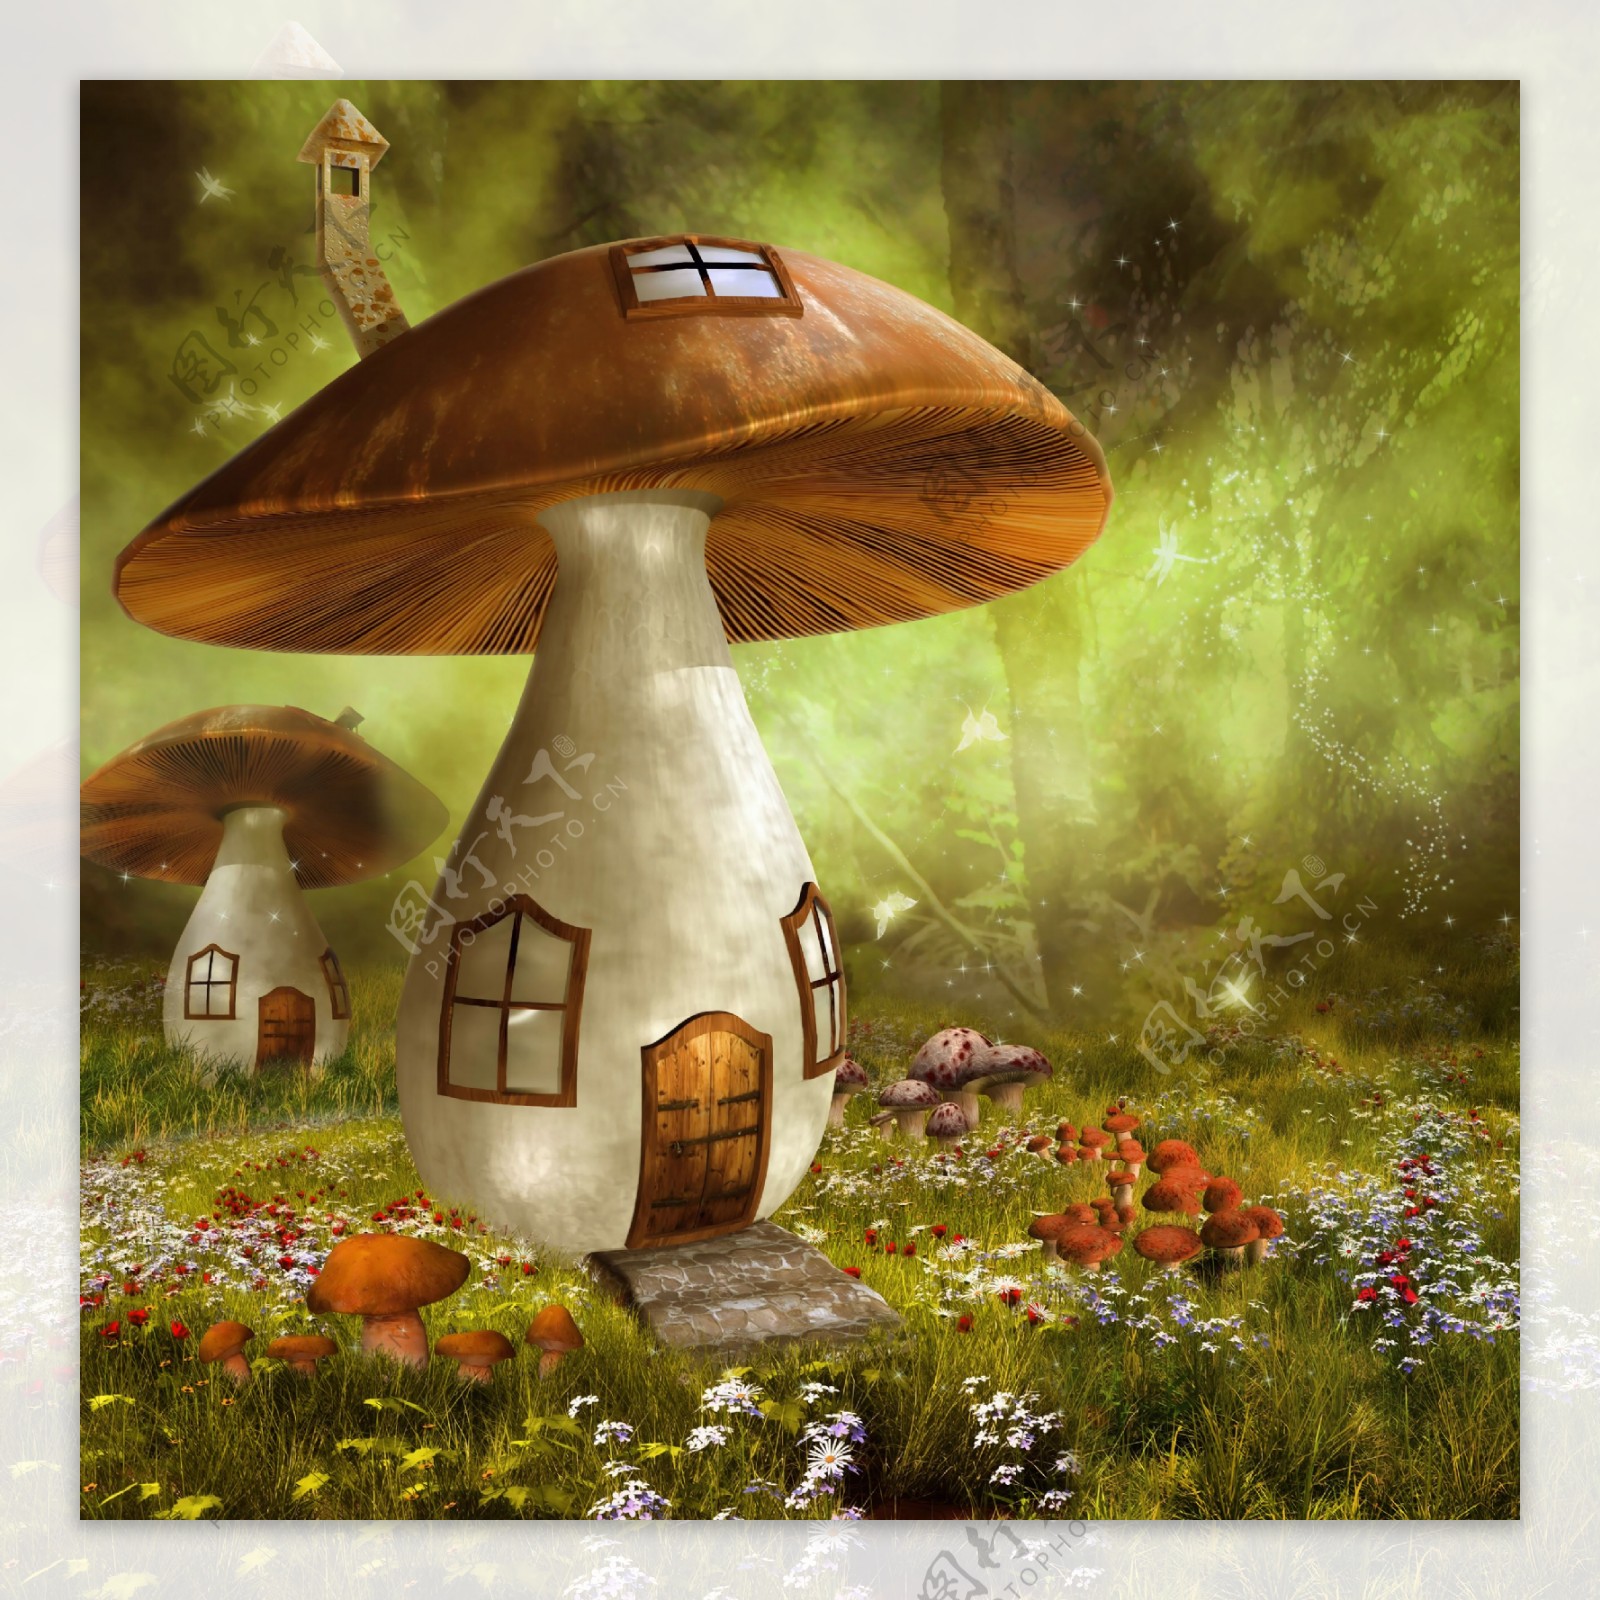 高清童话蘑菇图案背景jpg素材